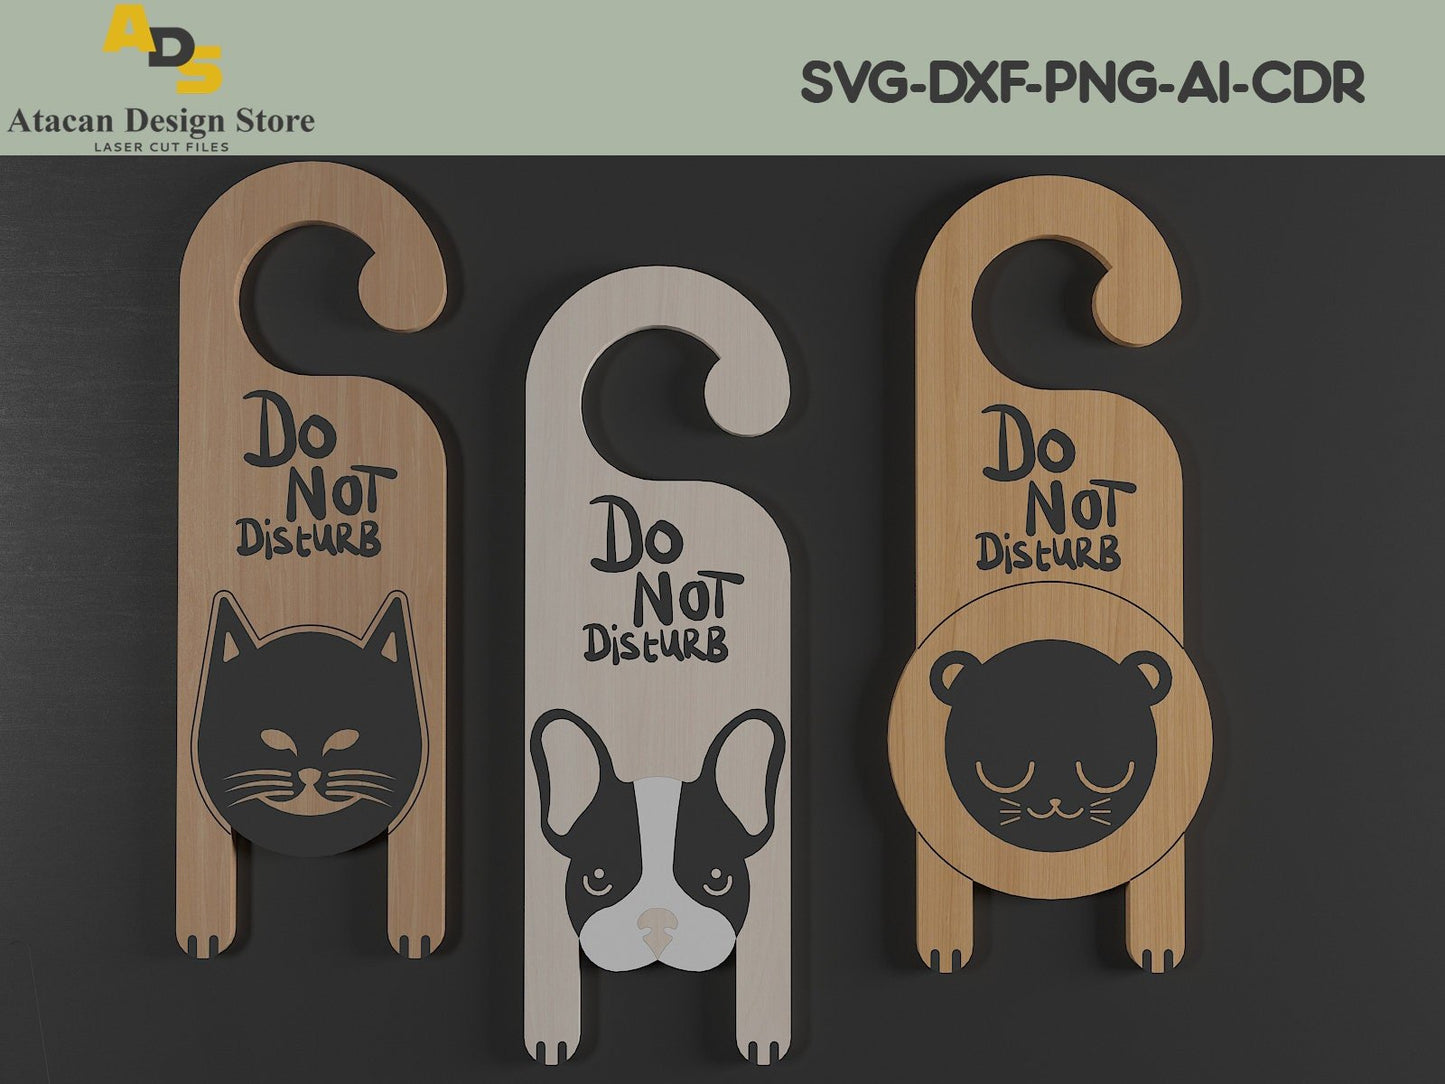 Do Not Disturb Dog Cat Signs / Animal Door Knob Warning Sign / Room Door handles Hanging 269